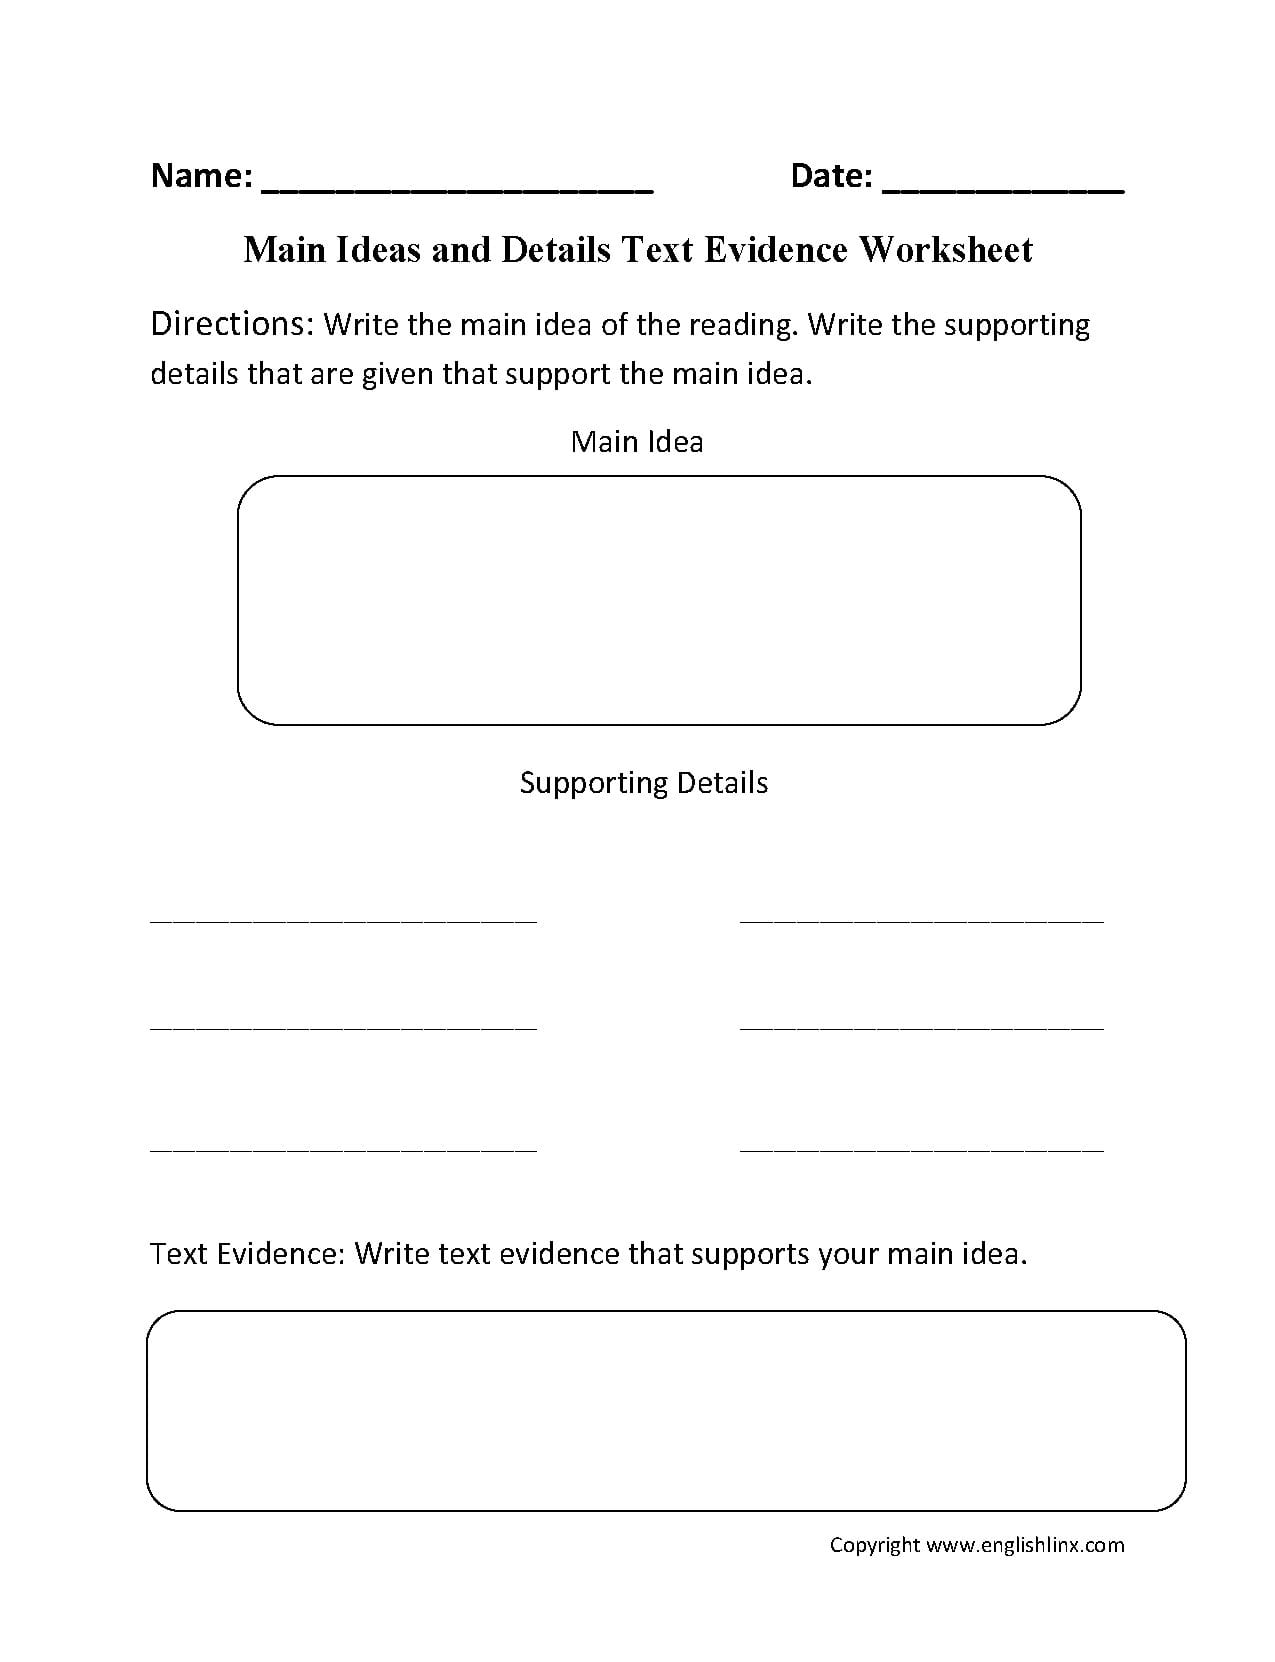 Main Idea Worksheets  Main Idea Text Evidence Worksheet